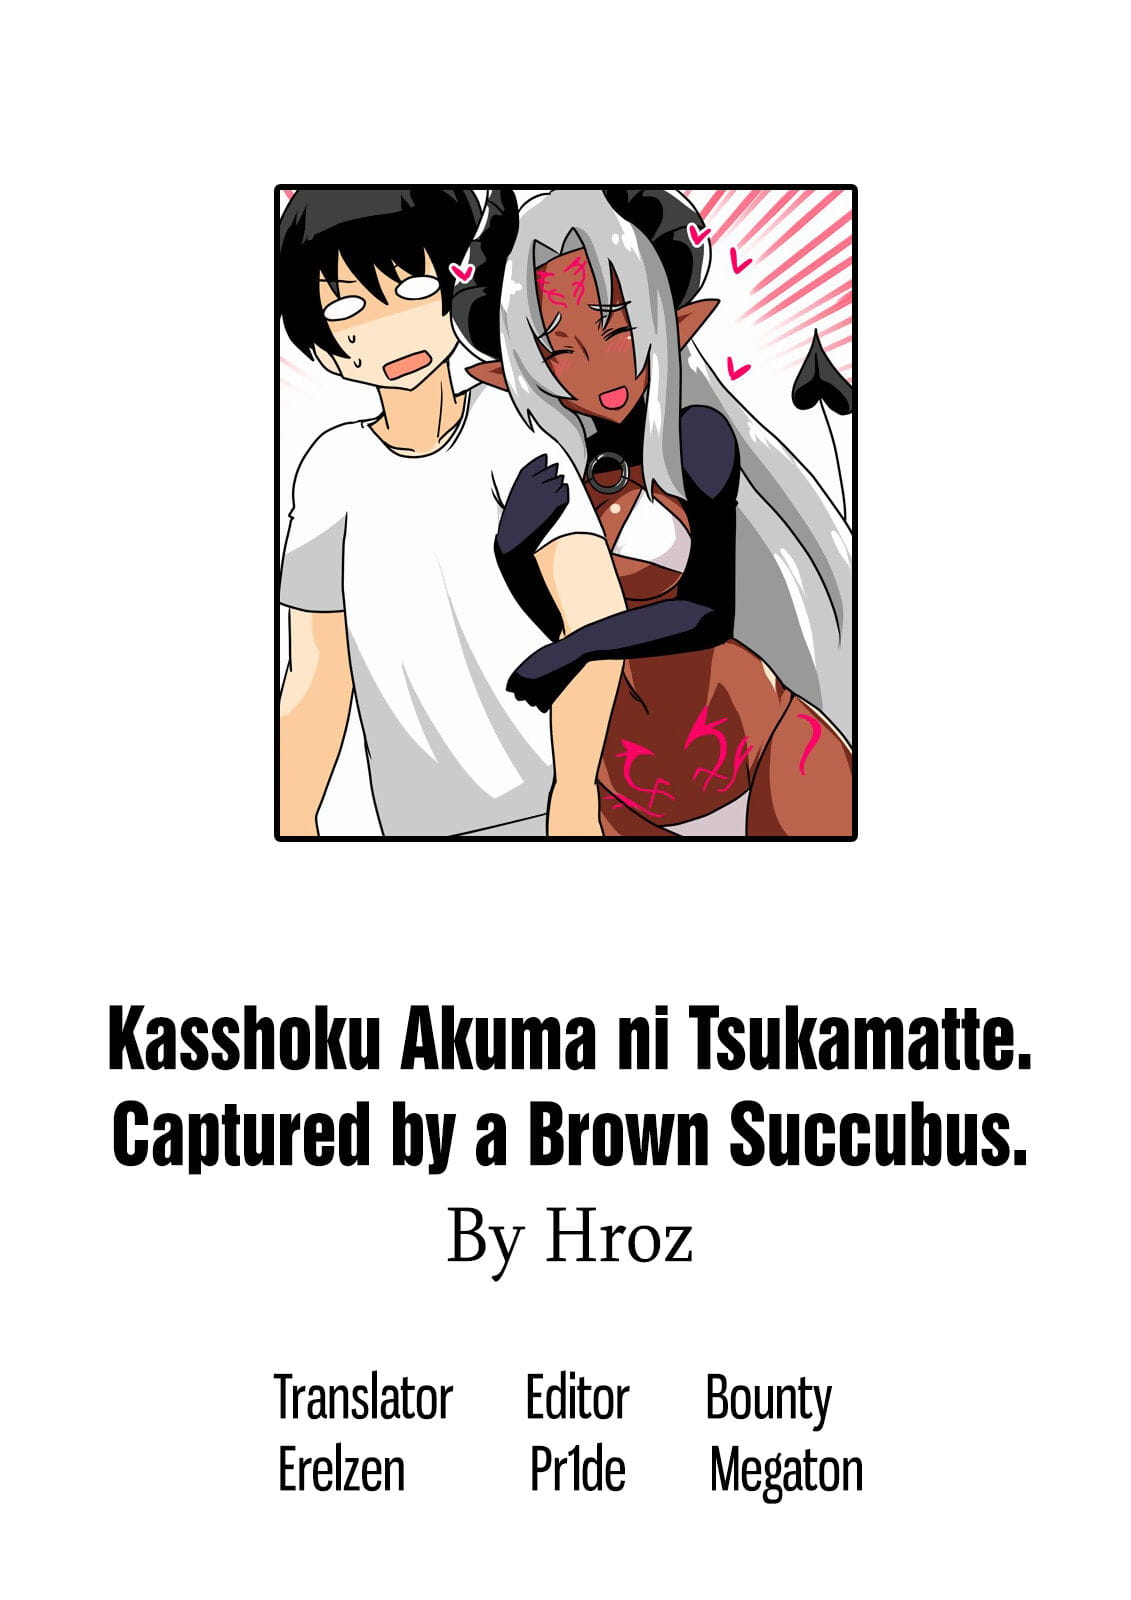 kasshoku akuma ดี  - จับตัว โดย เป็ สีน้ำตาล ศา page 1